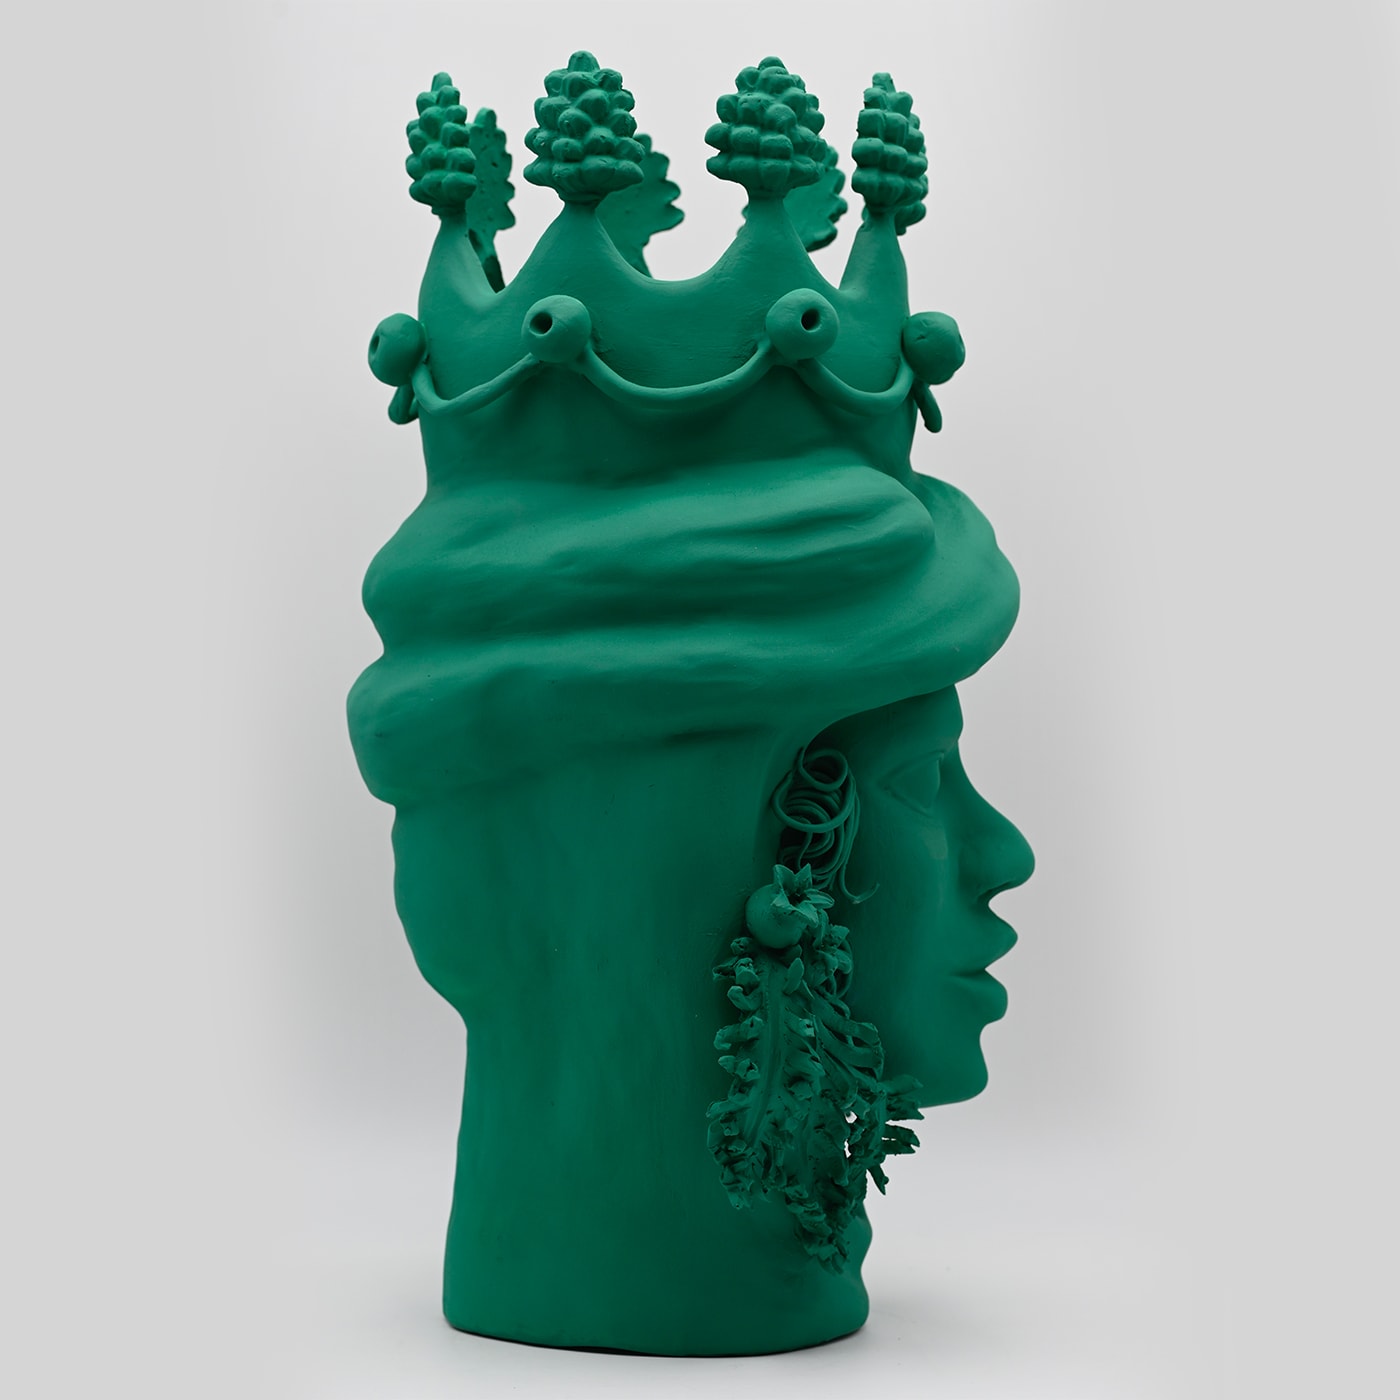 Moor's Head Green Sculpture